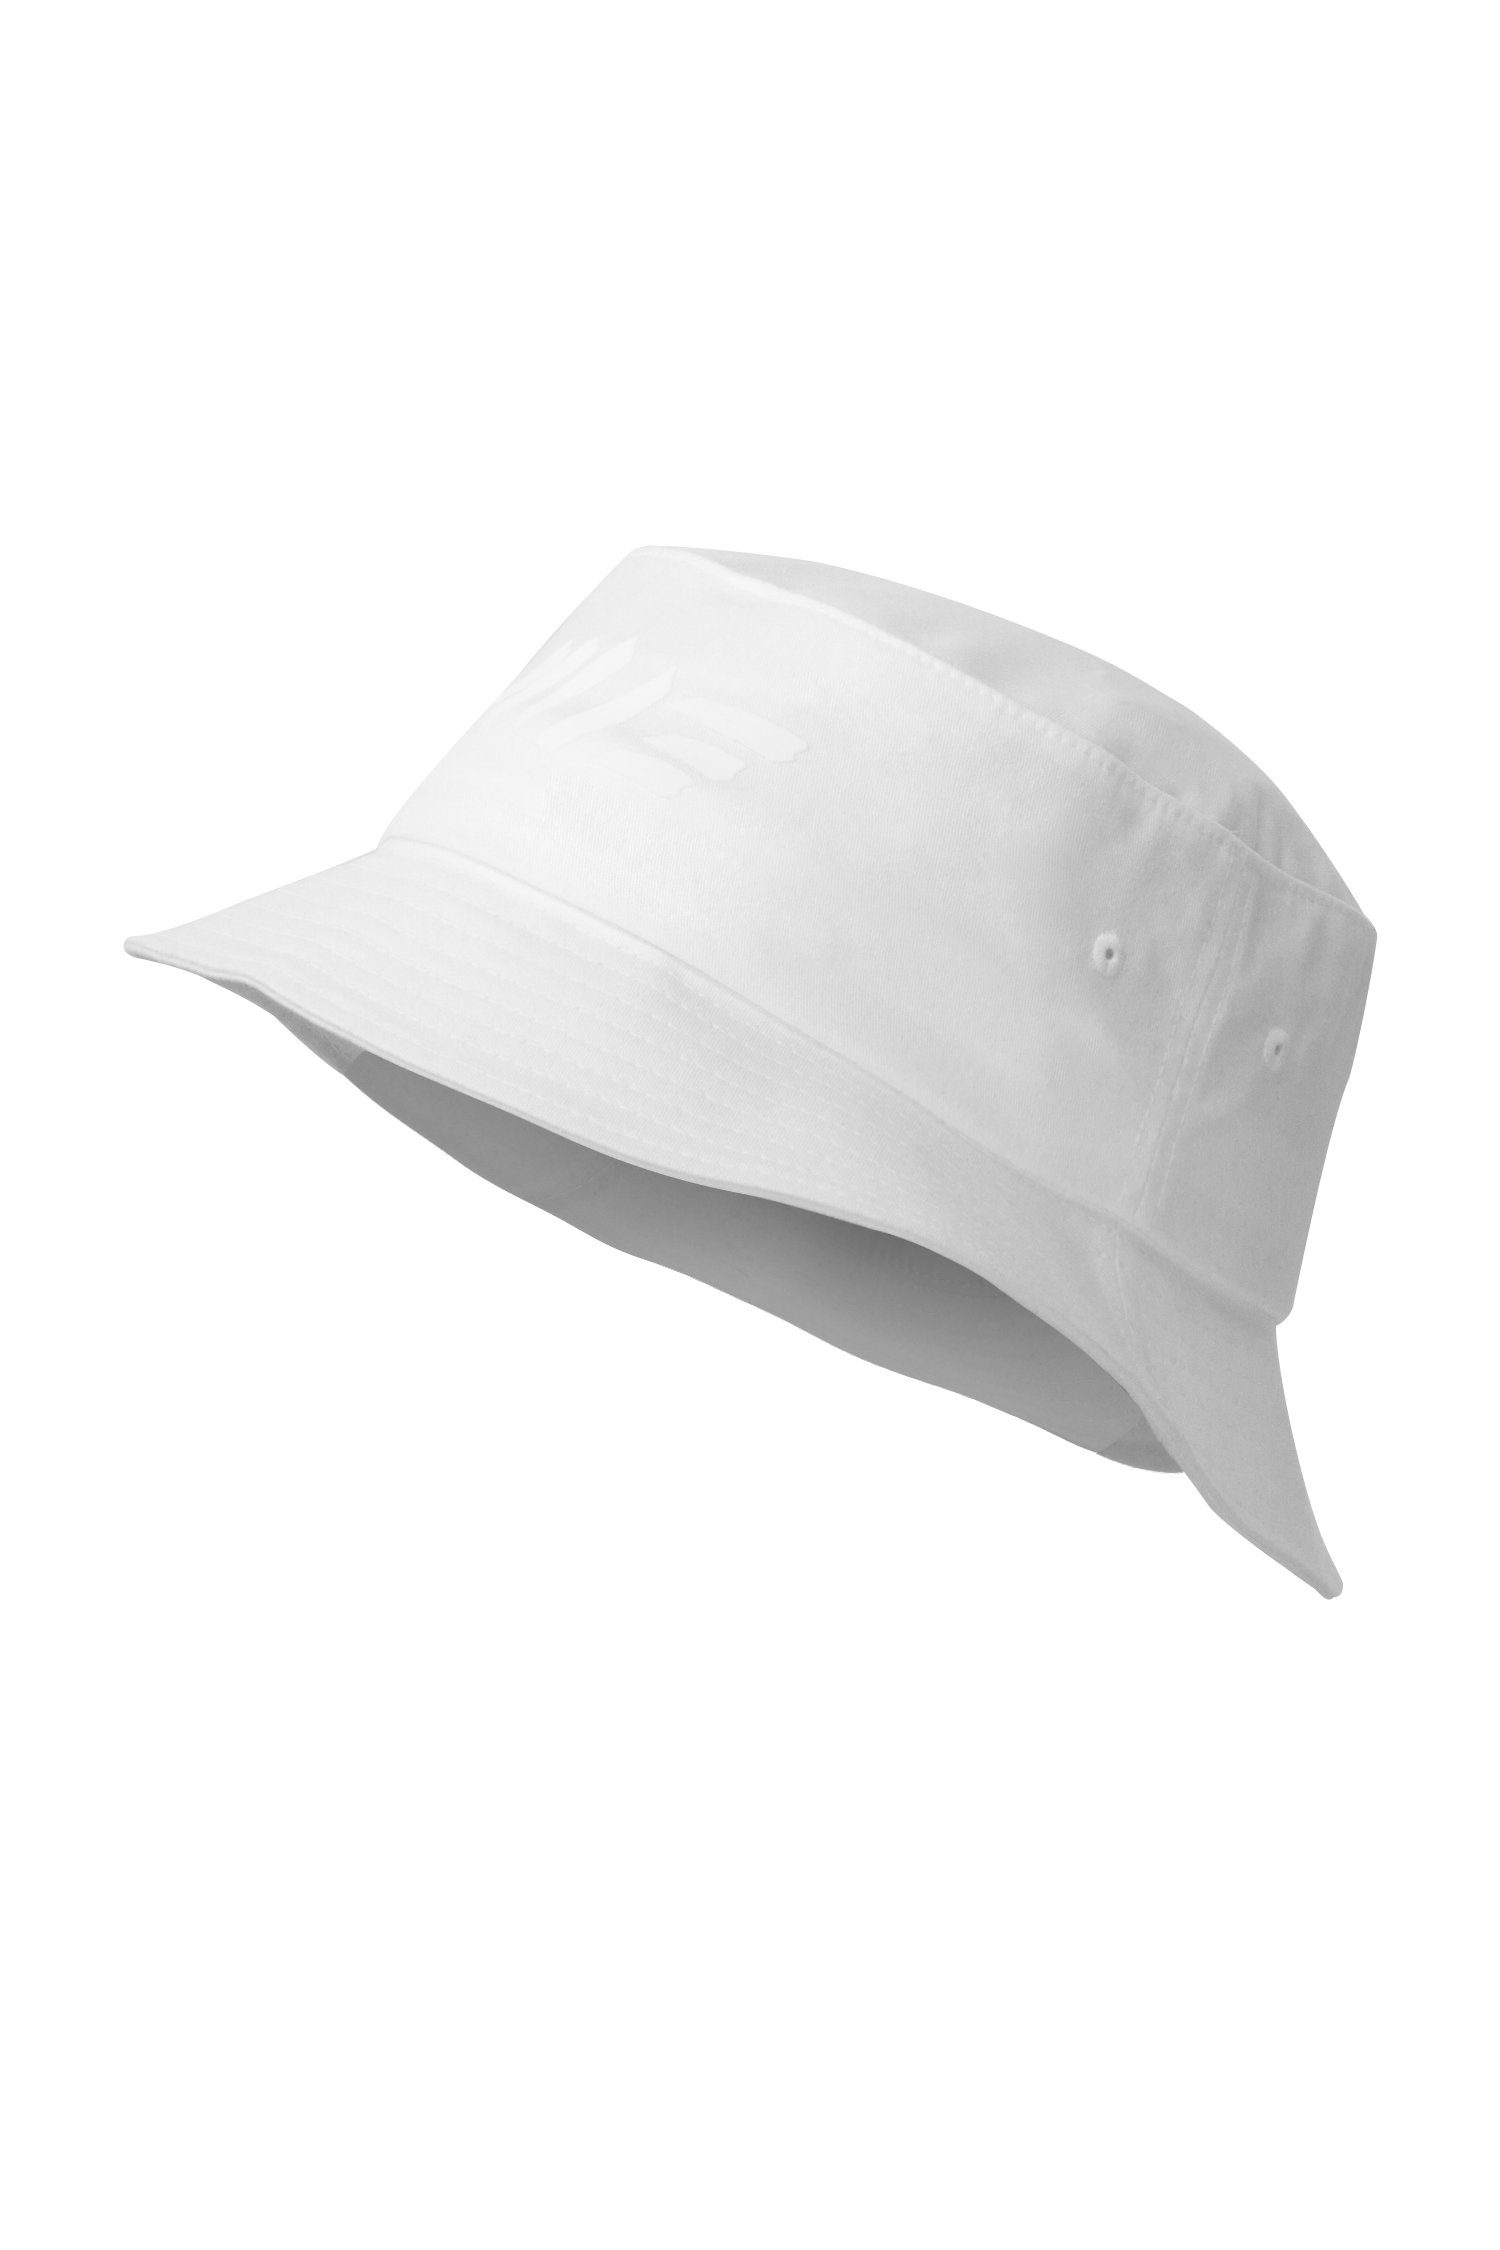 - Anglerhut, Hat Hat, Vegan Bucket Session Manufaktur13 M13 Fischermütze 100% White Fischerhut